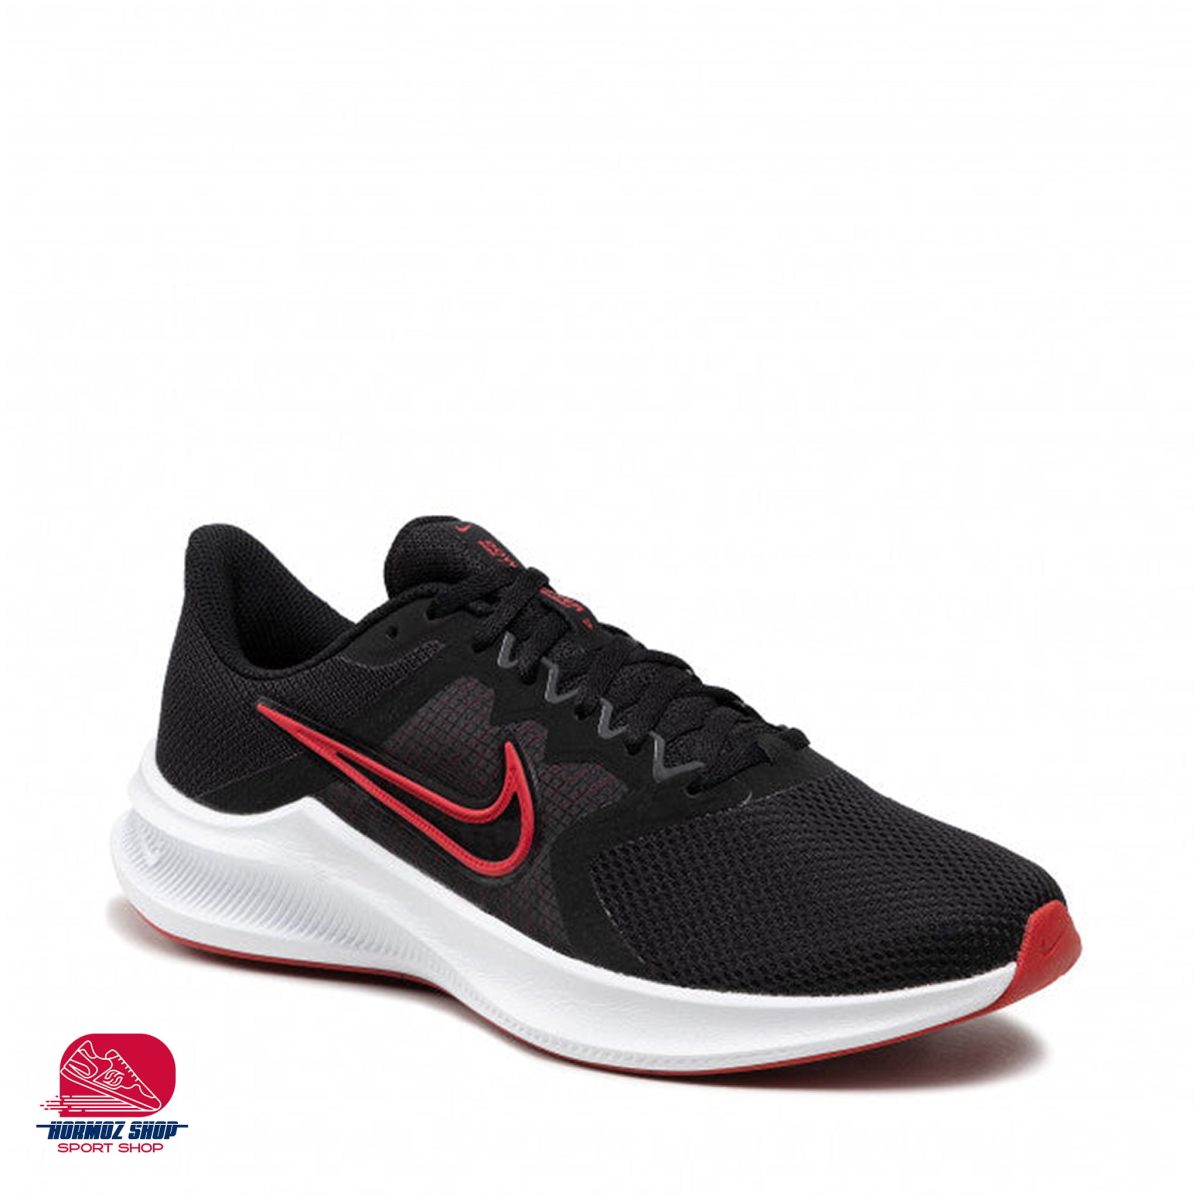 Nike cw3411 005 8